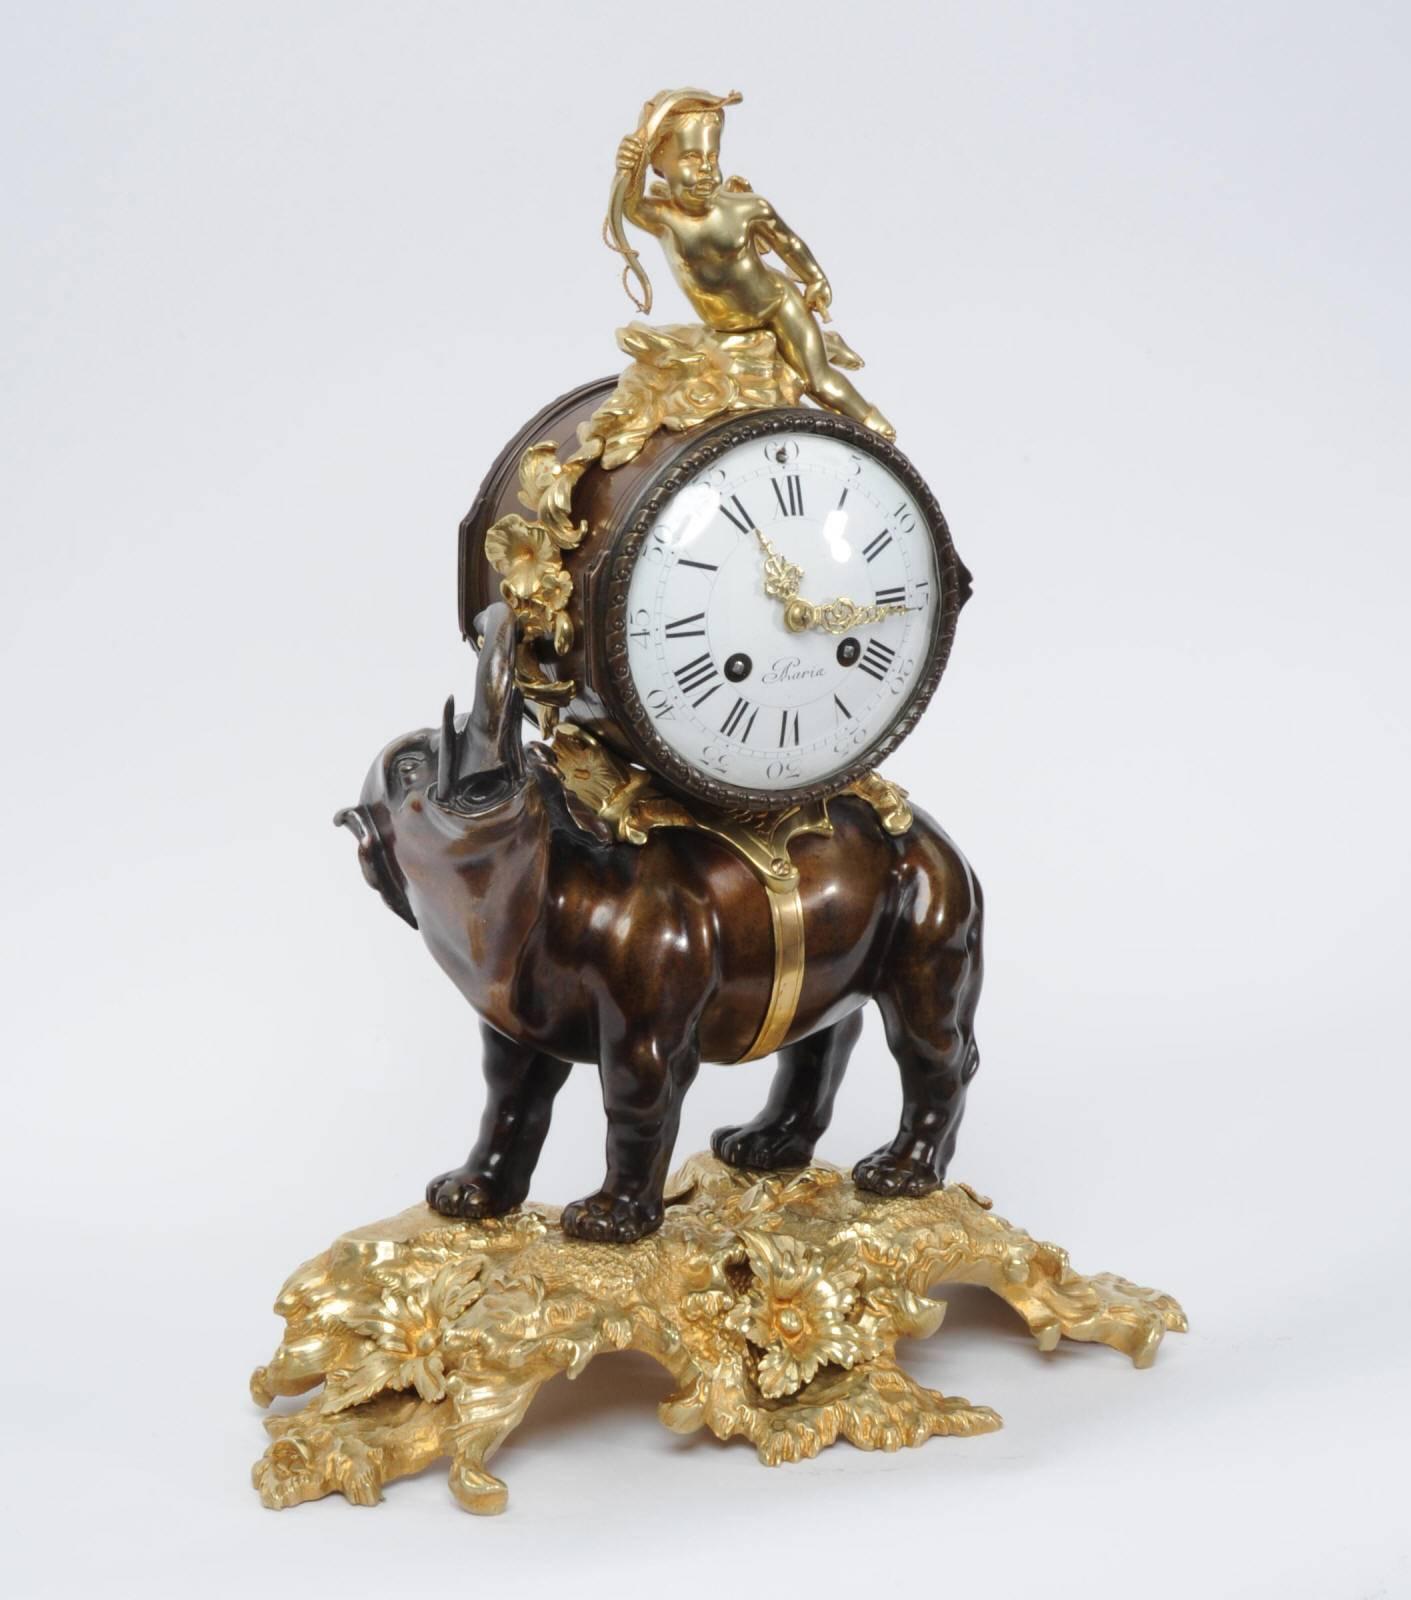 Une fabuleuse et rare horloge française ancienne d'origine:: avec un éléphant portant l'horloge et Cupidon assis sur le dessus. Il est magnifiquement réalisé en bronze et en ormolu (bronze finement doré). L'éléphant se tient fièrement sur une base